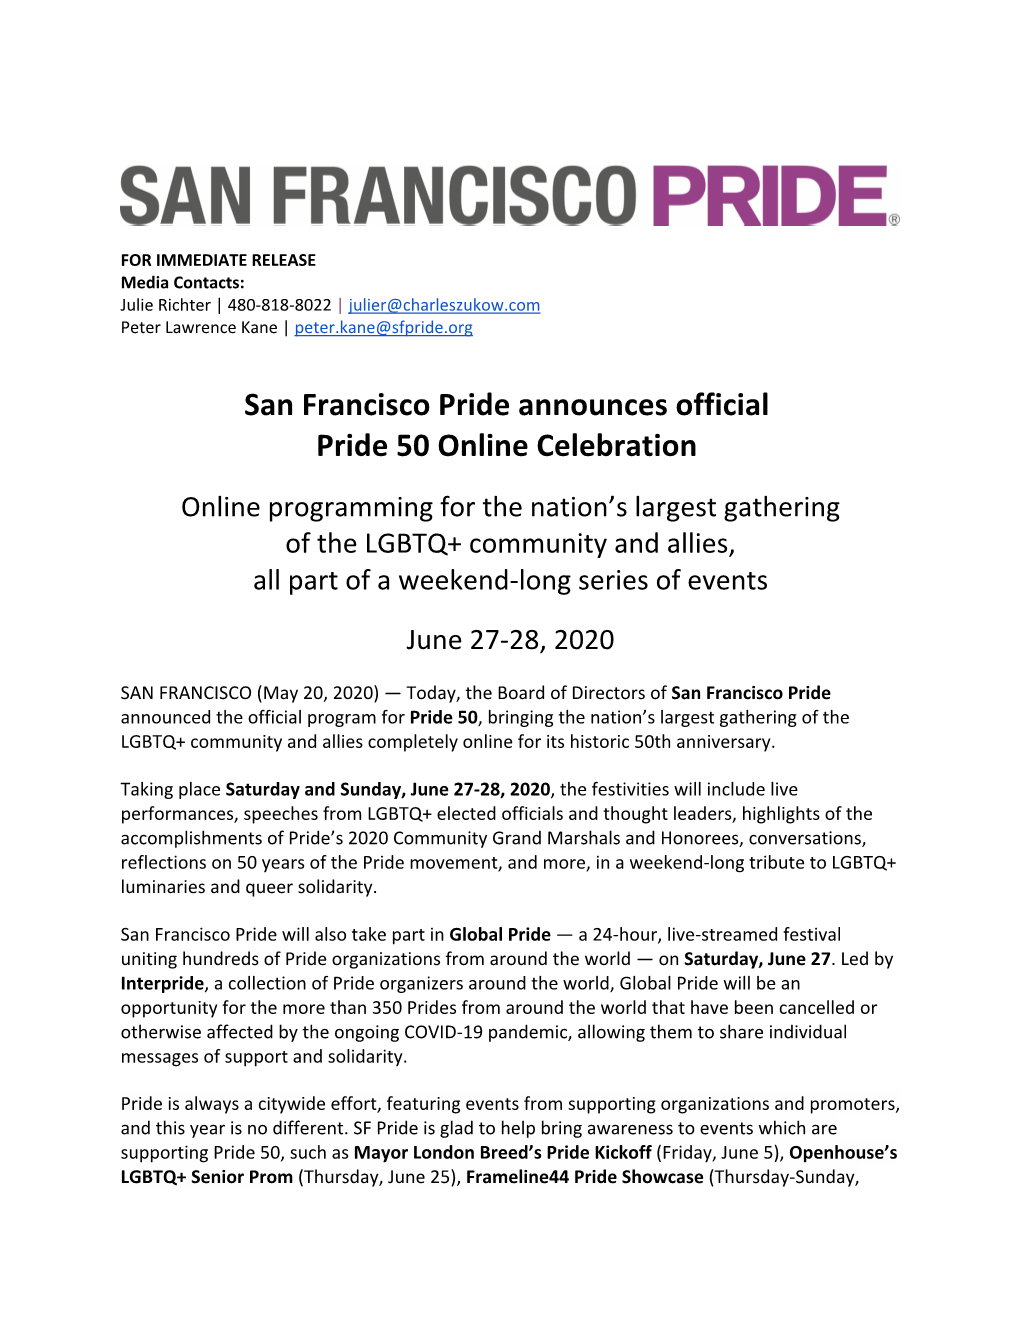 CORRECTED SF Pride 50 Press Release